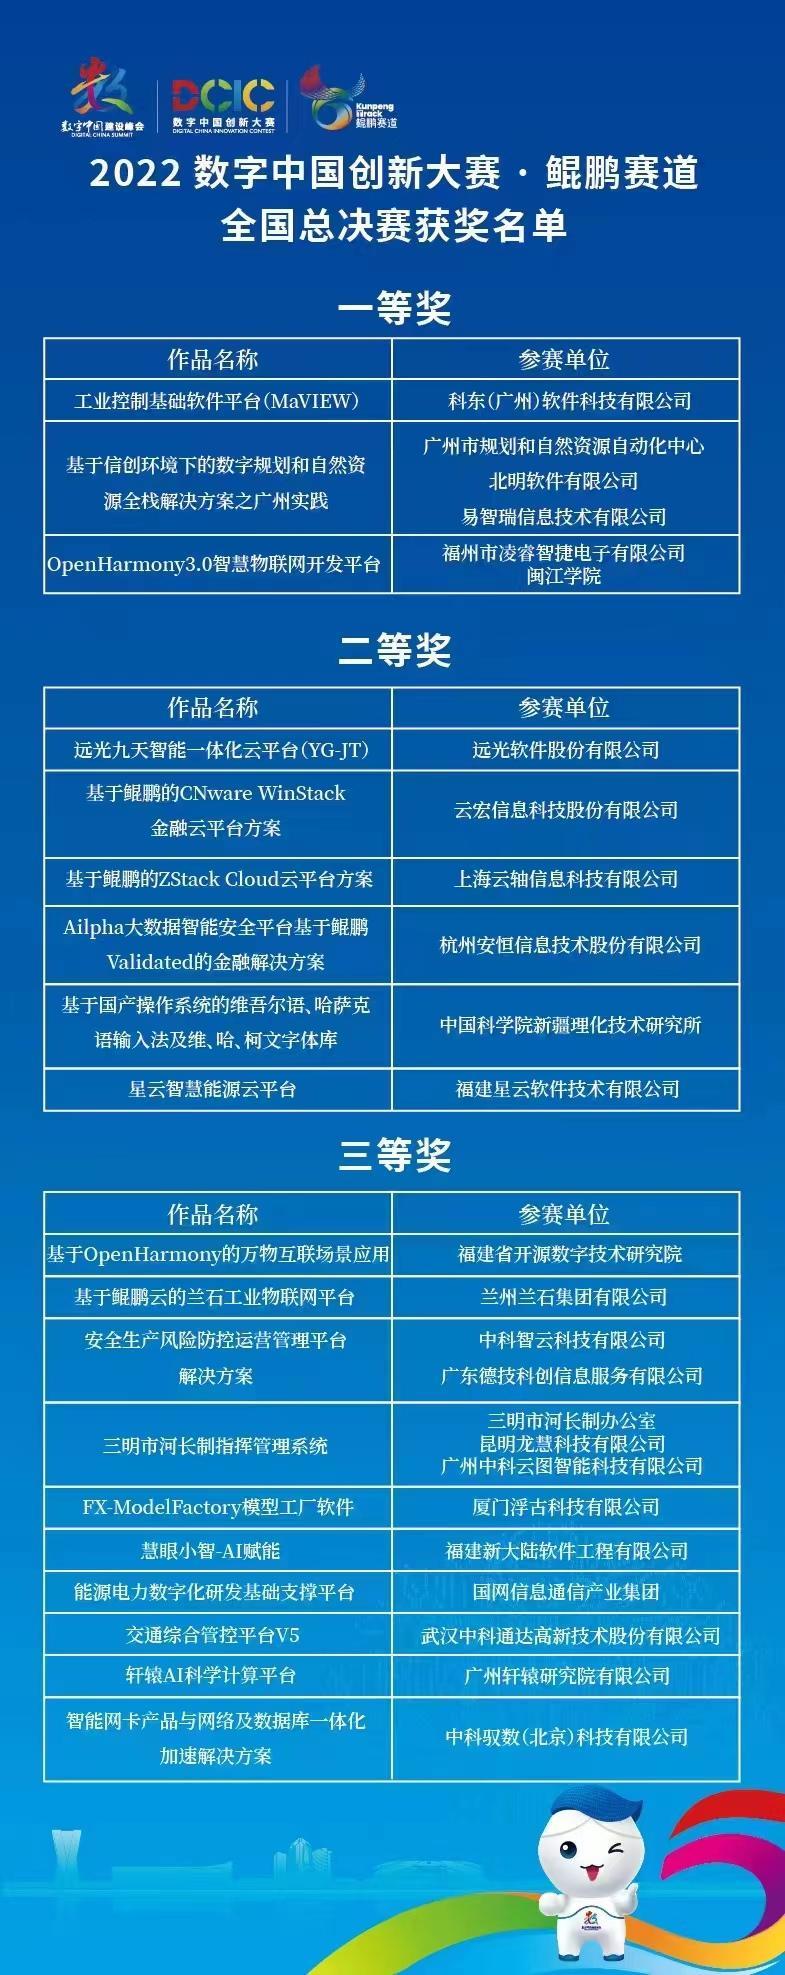 2022鲲鹏赛道全国总决赛全部获奖队伍名单列表。　中国科协科学技术传播中心 供图